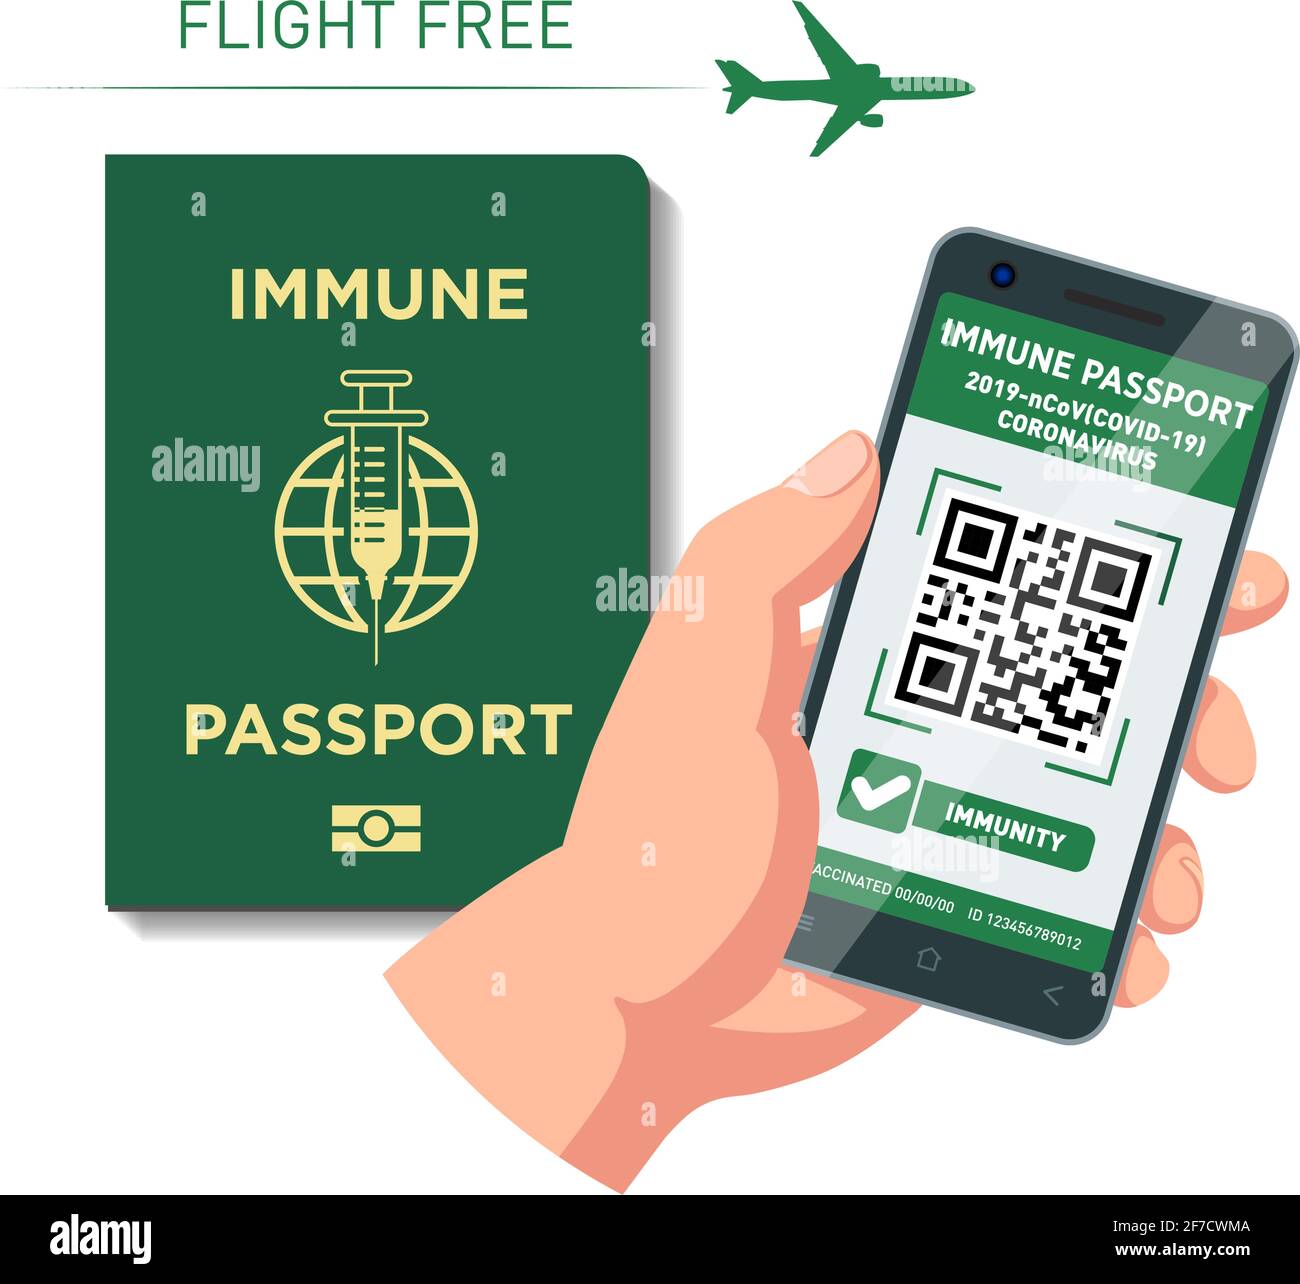 Pasaporte inmune de vacunación digital y de papel para el vuelo. Viaje de seguridad después de la pandemia de Covid-19. Vector sobre fondo transparente Ilustración del Vector